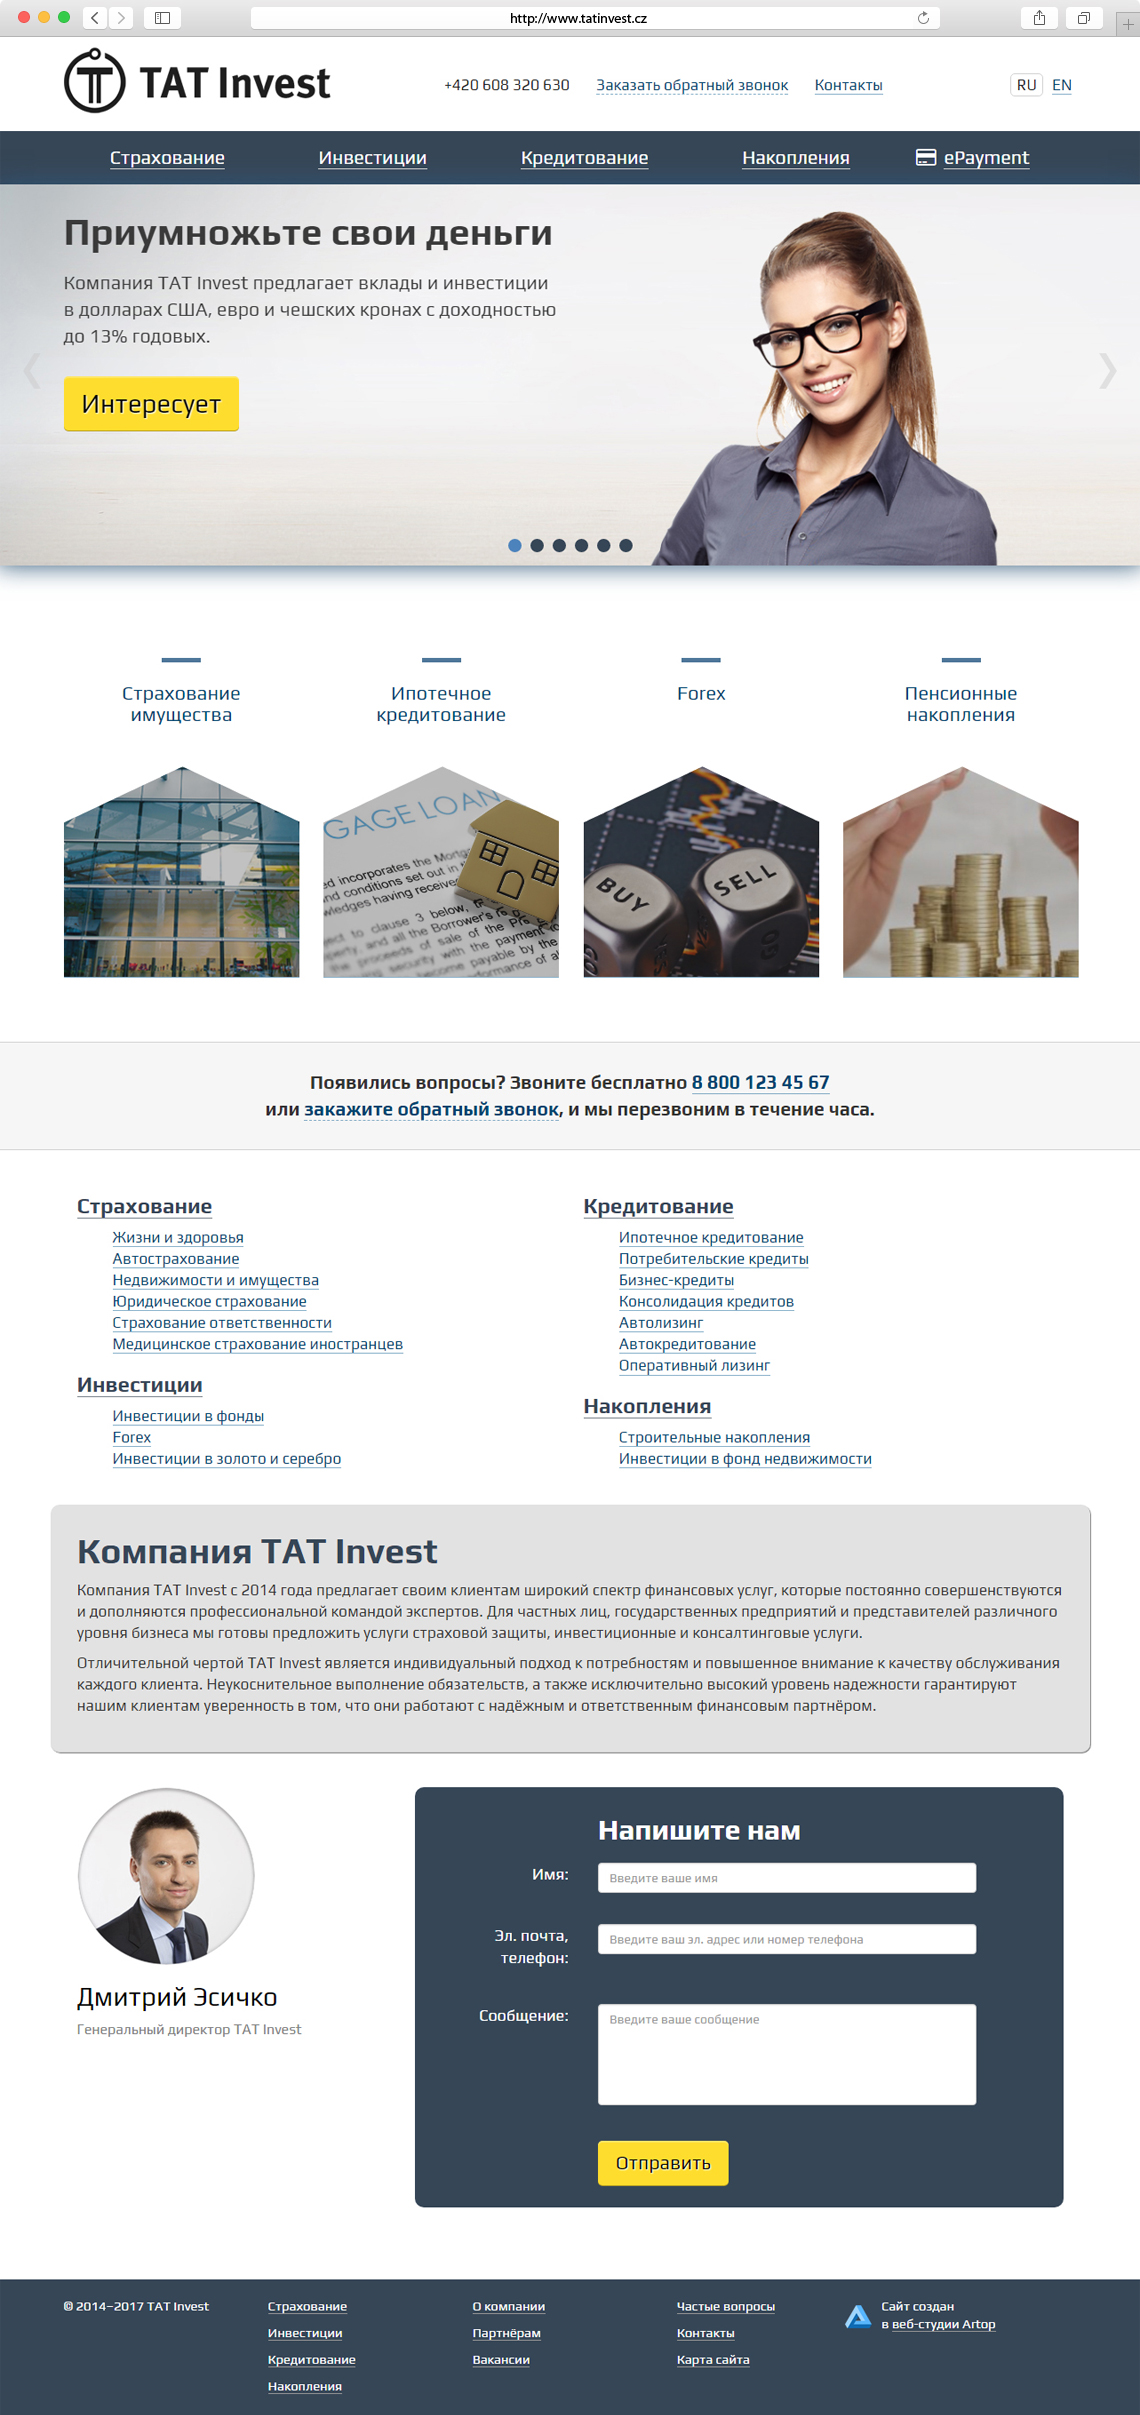 Главная страница www.tatinvest.cz